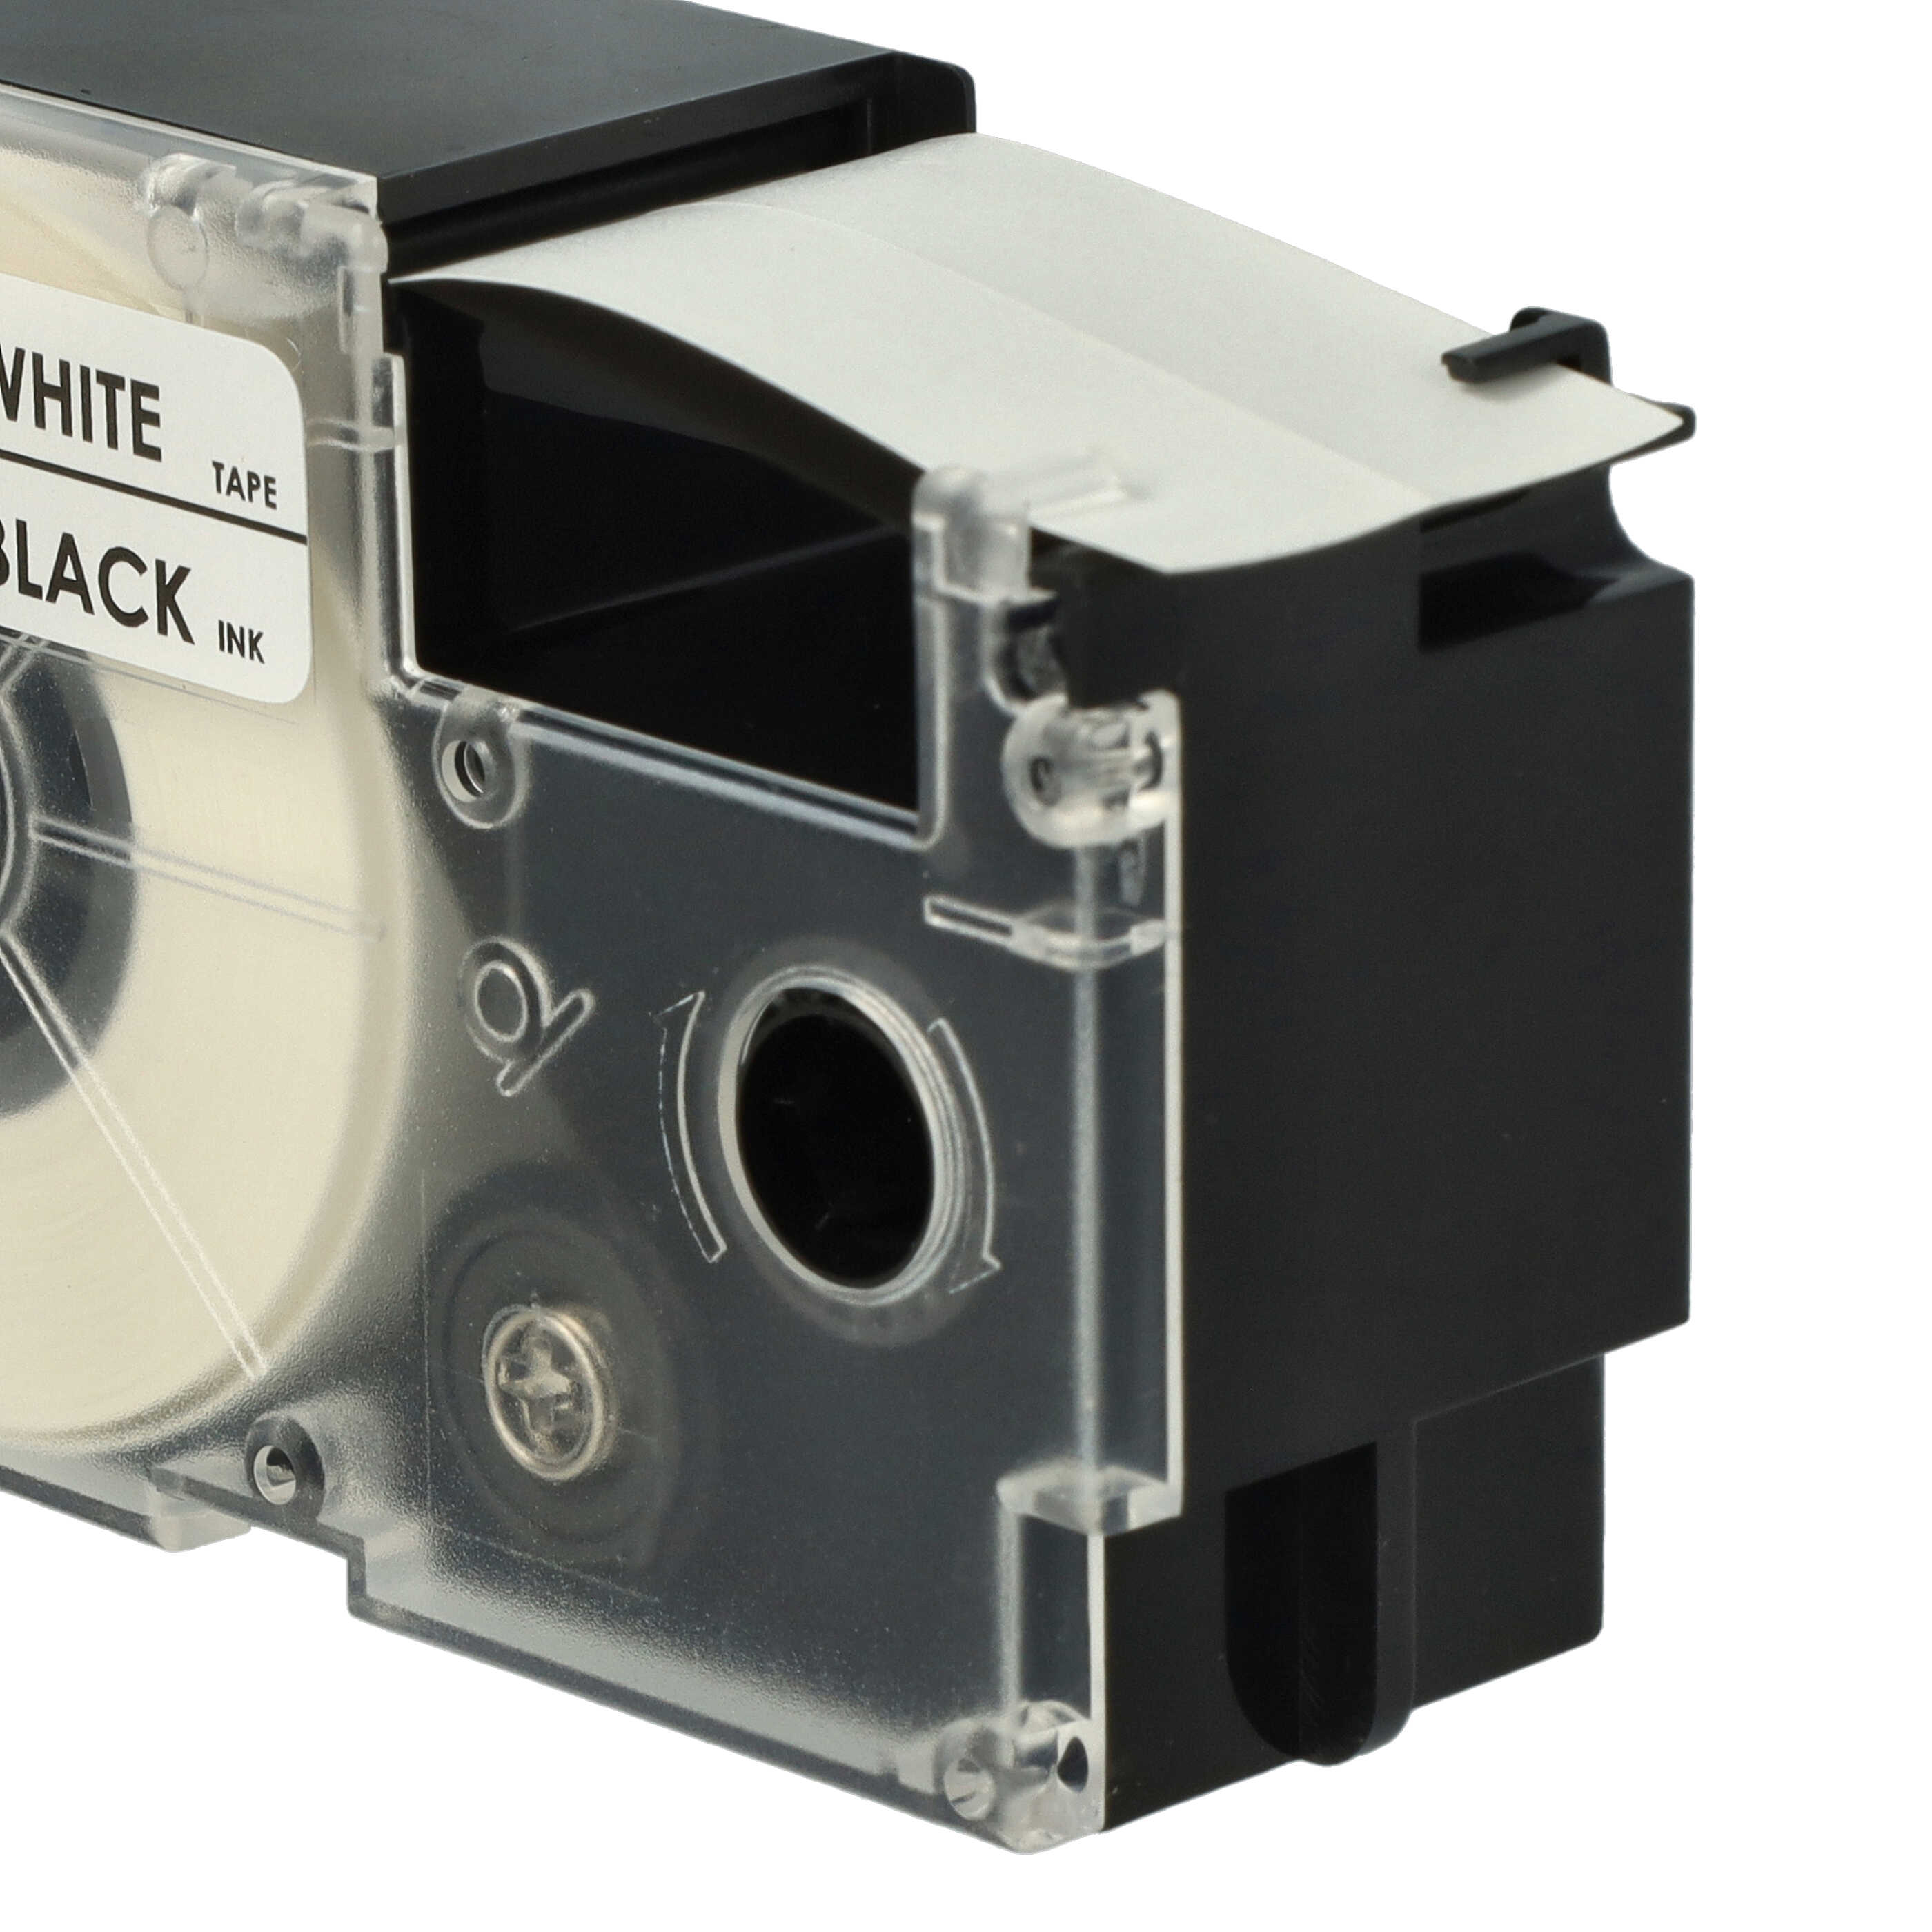 10x Cassettes à ruban remplacent Casio XR-24WE1 - 24mm lettrage Noir ruban Blanc